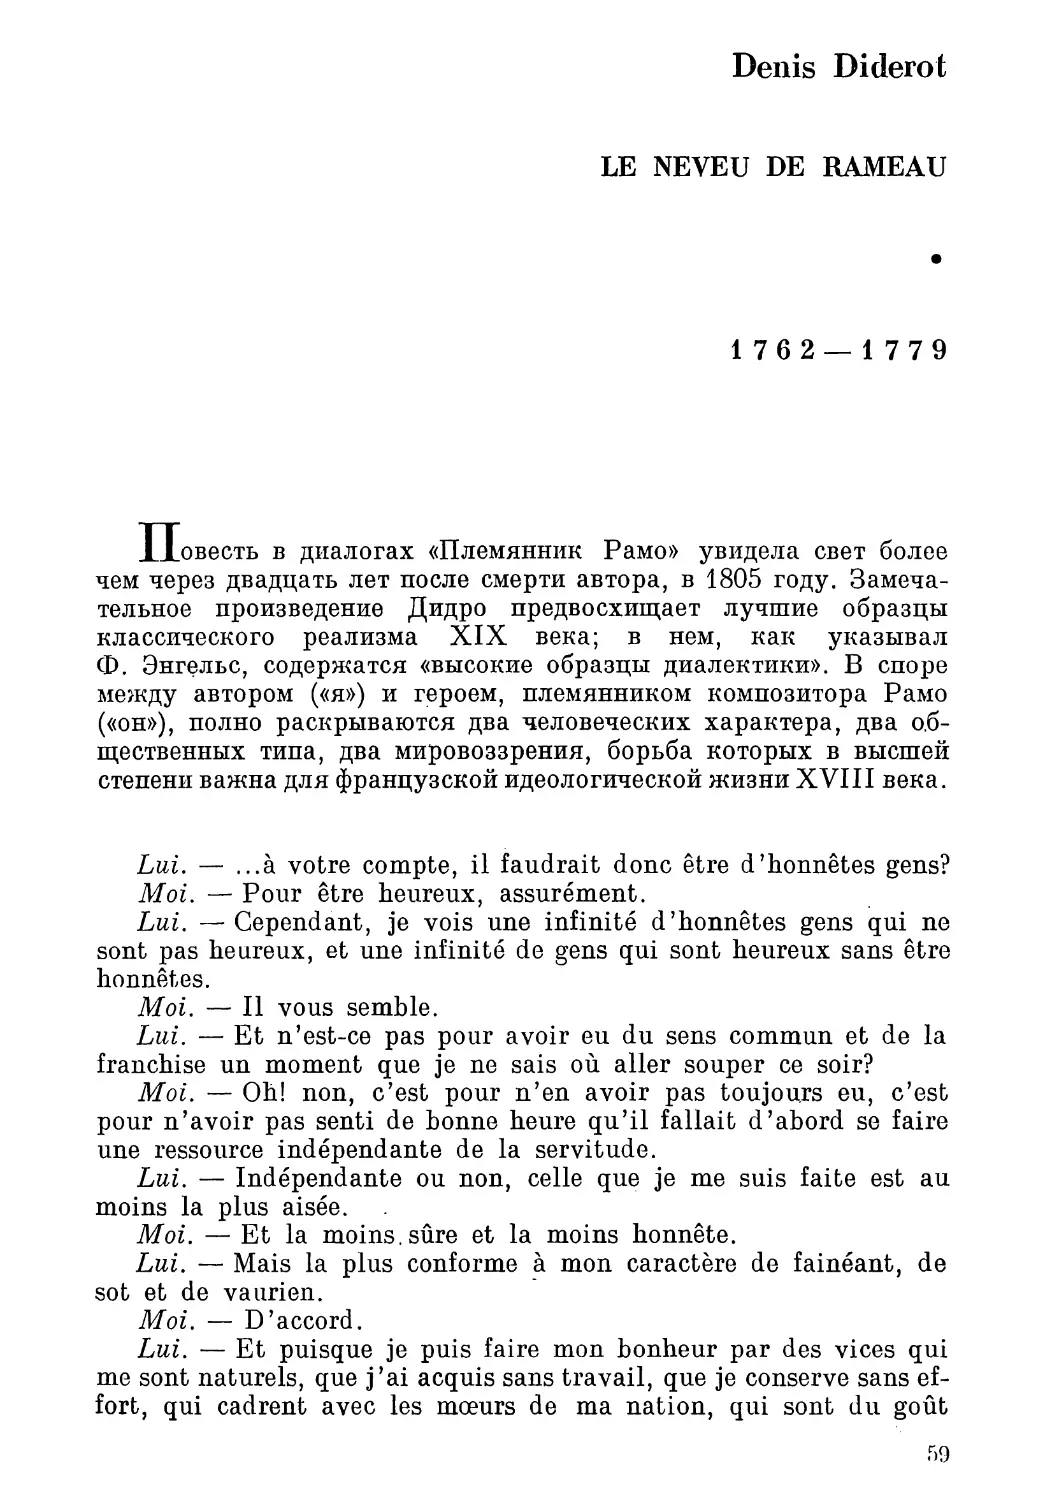 Denis Diderot: Le Neveu de Rameau